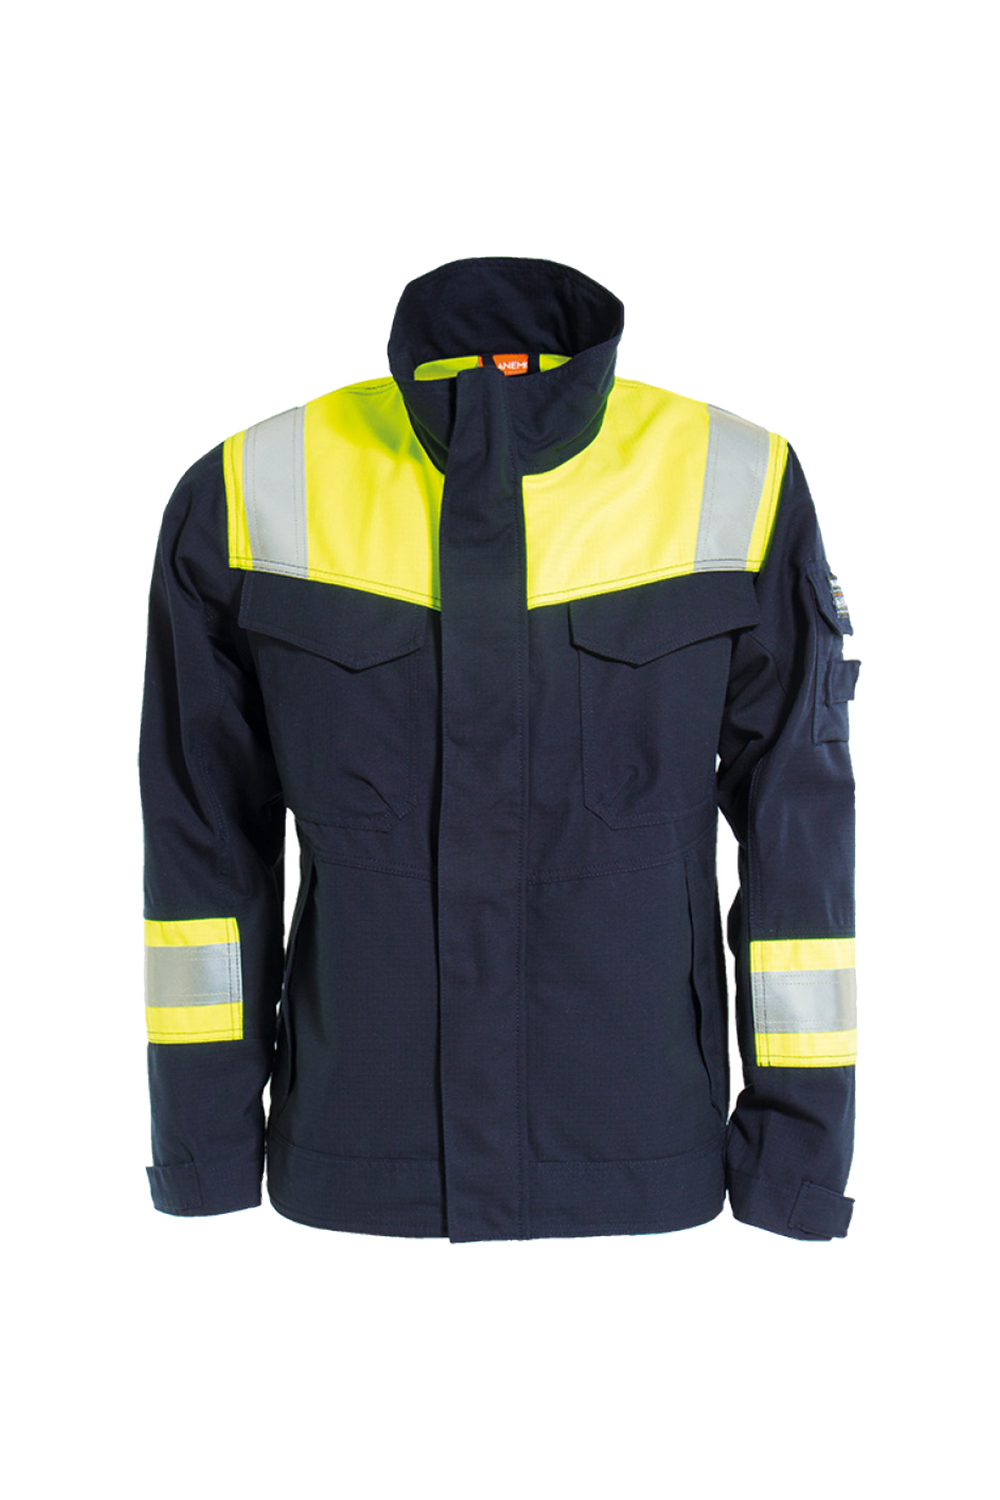 Tera TX Non Metal FR Jacket  6030 81 / Tranemo / Workwear